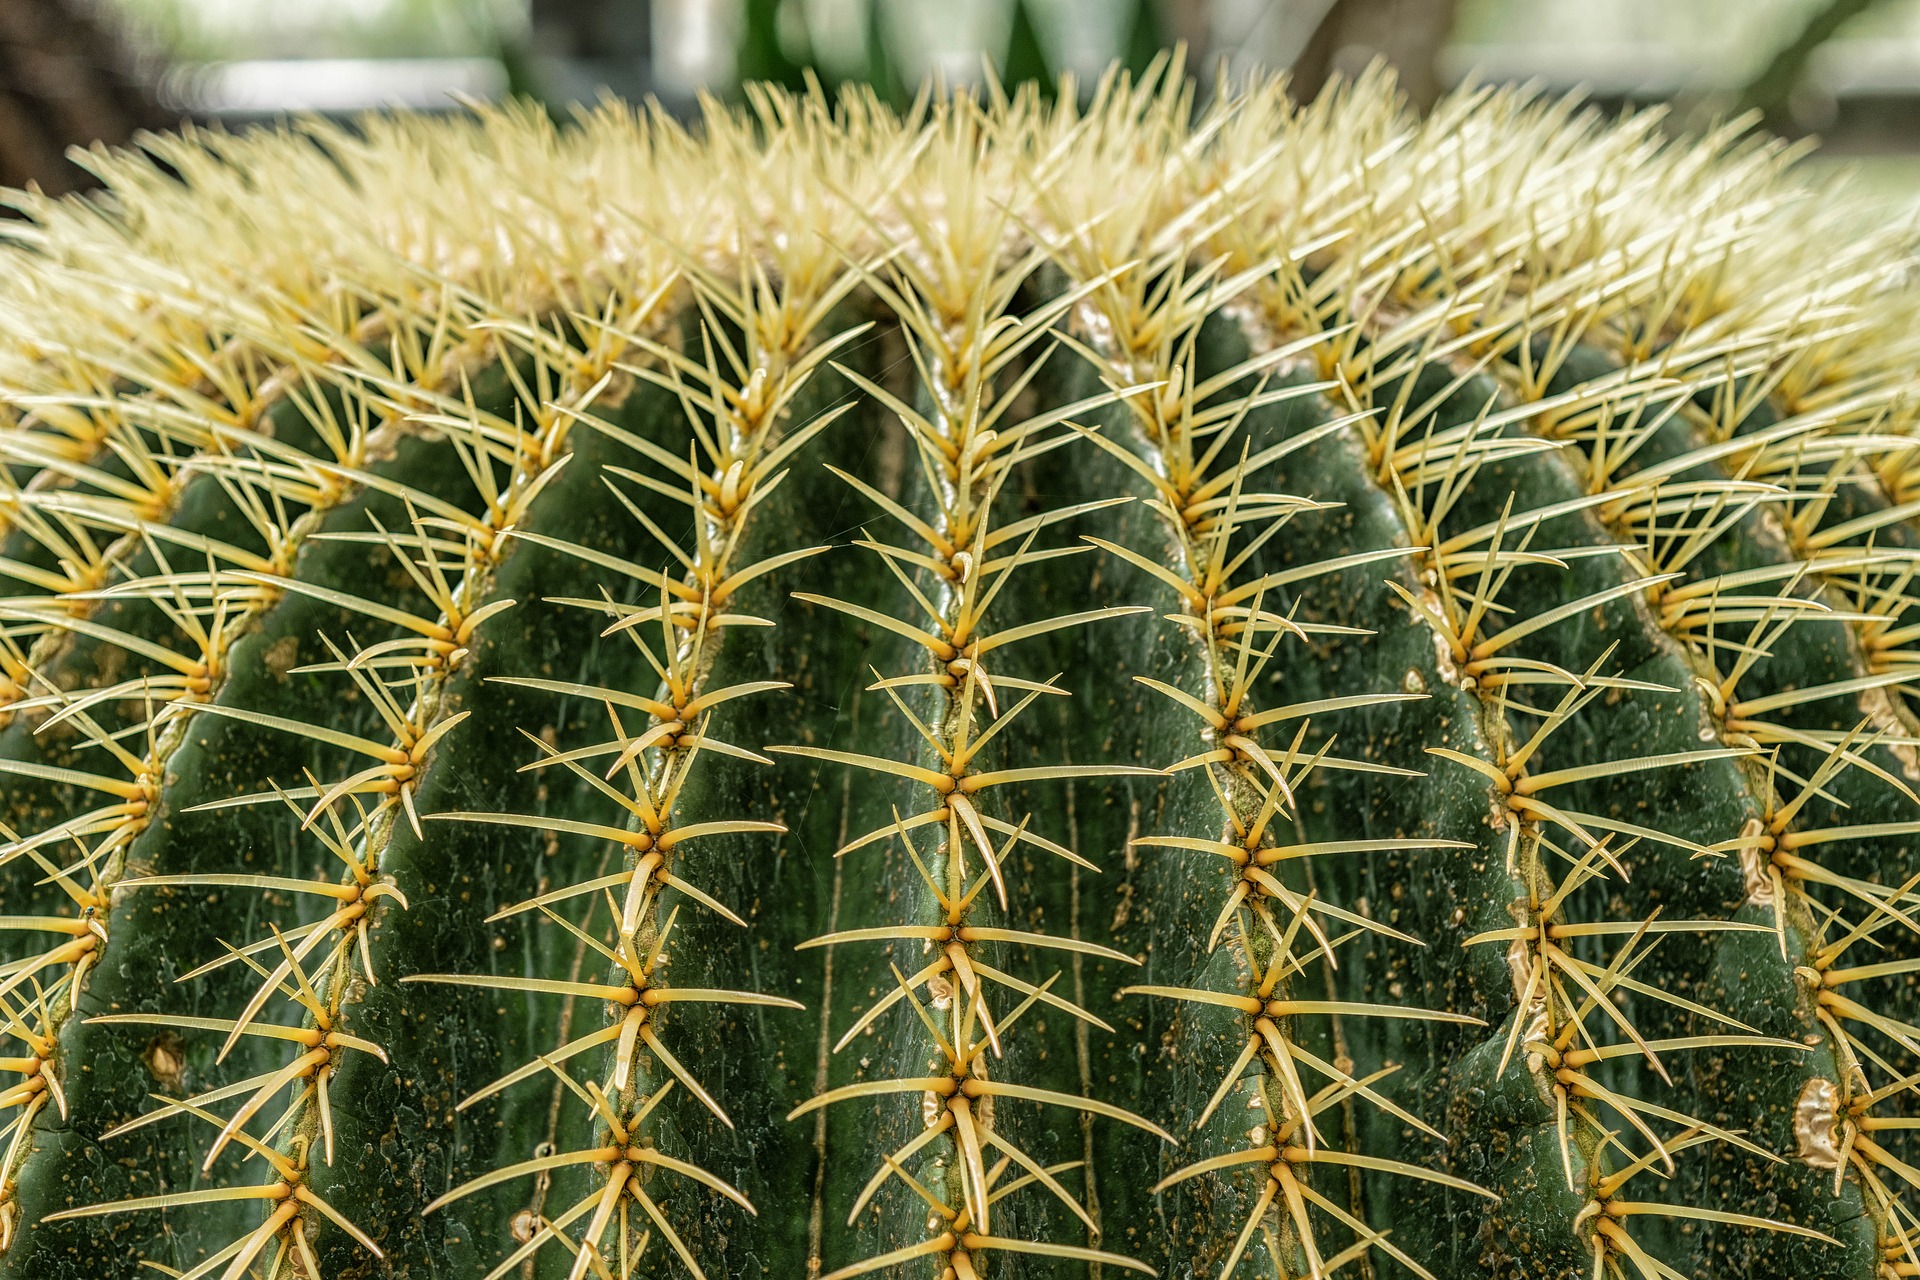 Cactus closeup photo